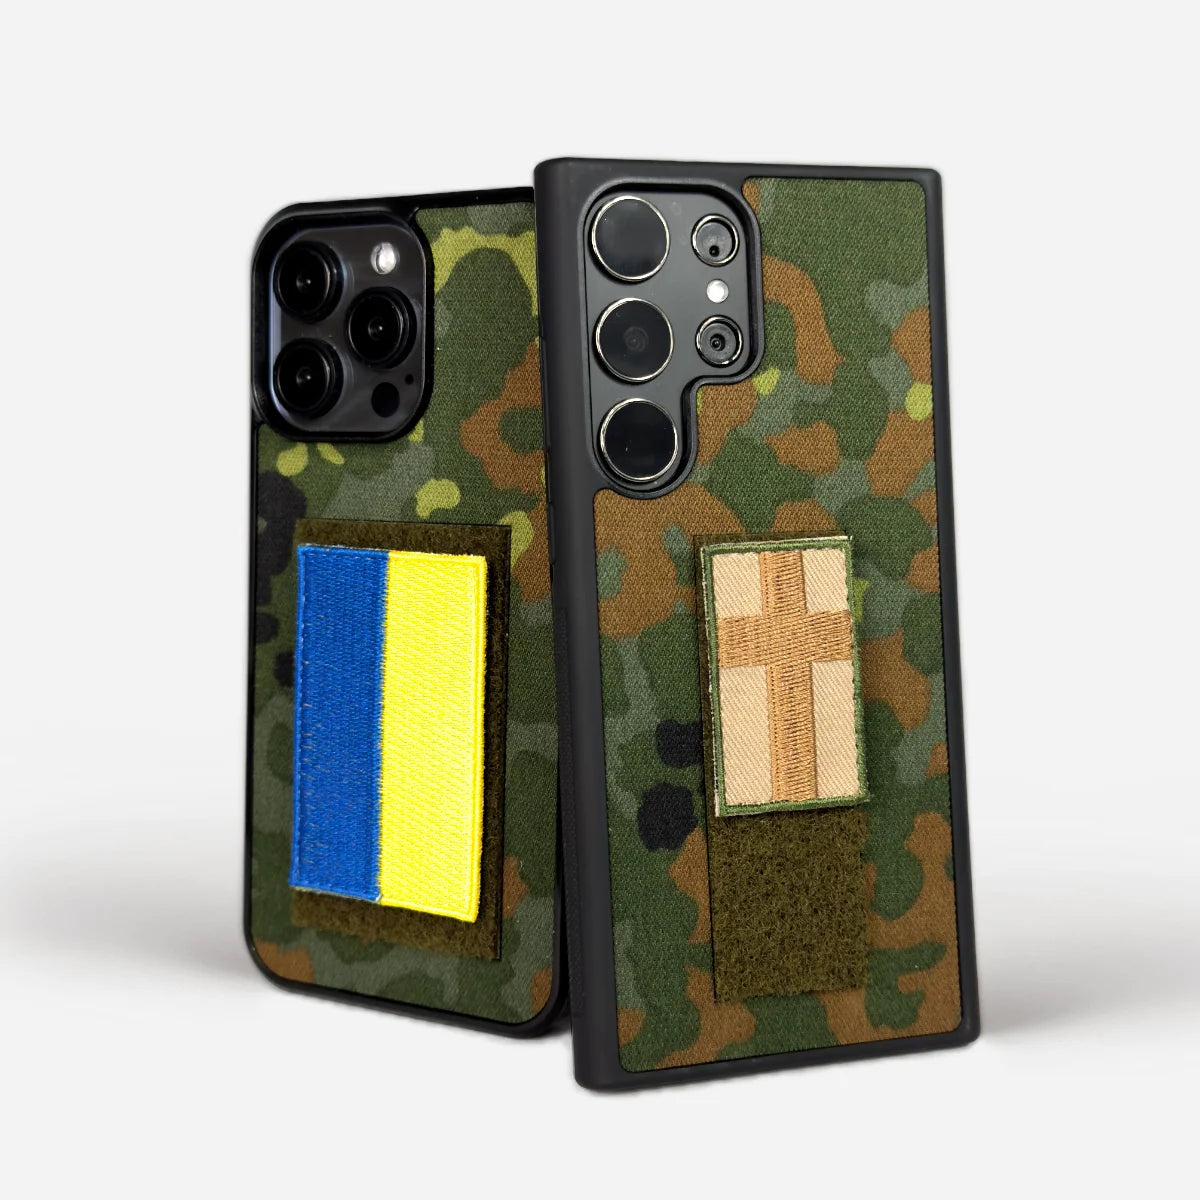 Aito Flecktarn-puhelinkotelo, valmistettu Saksan armeijan kamouflagemateriaalista ja iskunkestävästä muovista. MagSafe, oma logo ja tarrapinta. Laadukas ja suojaava. Valmistettu rakkaudella.